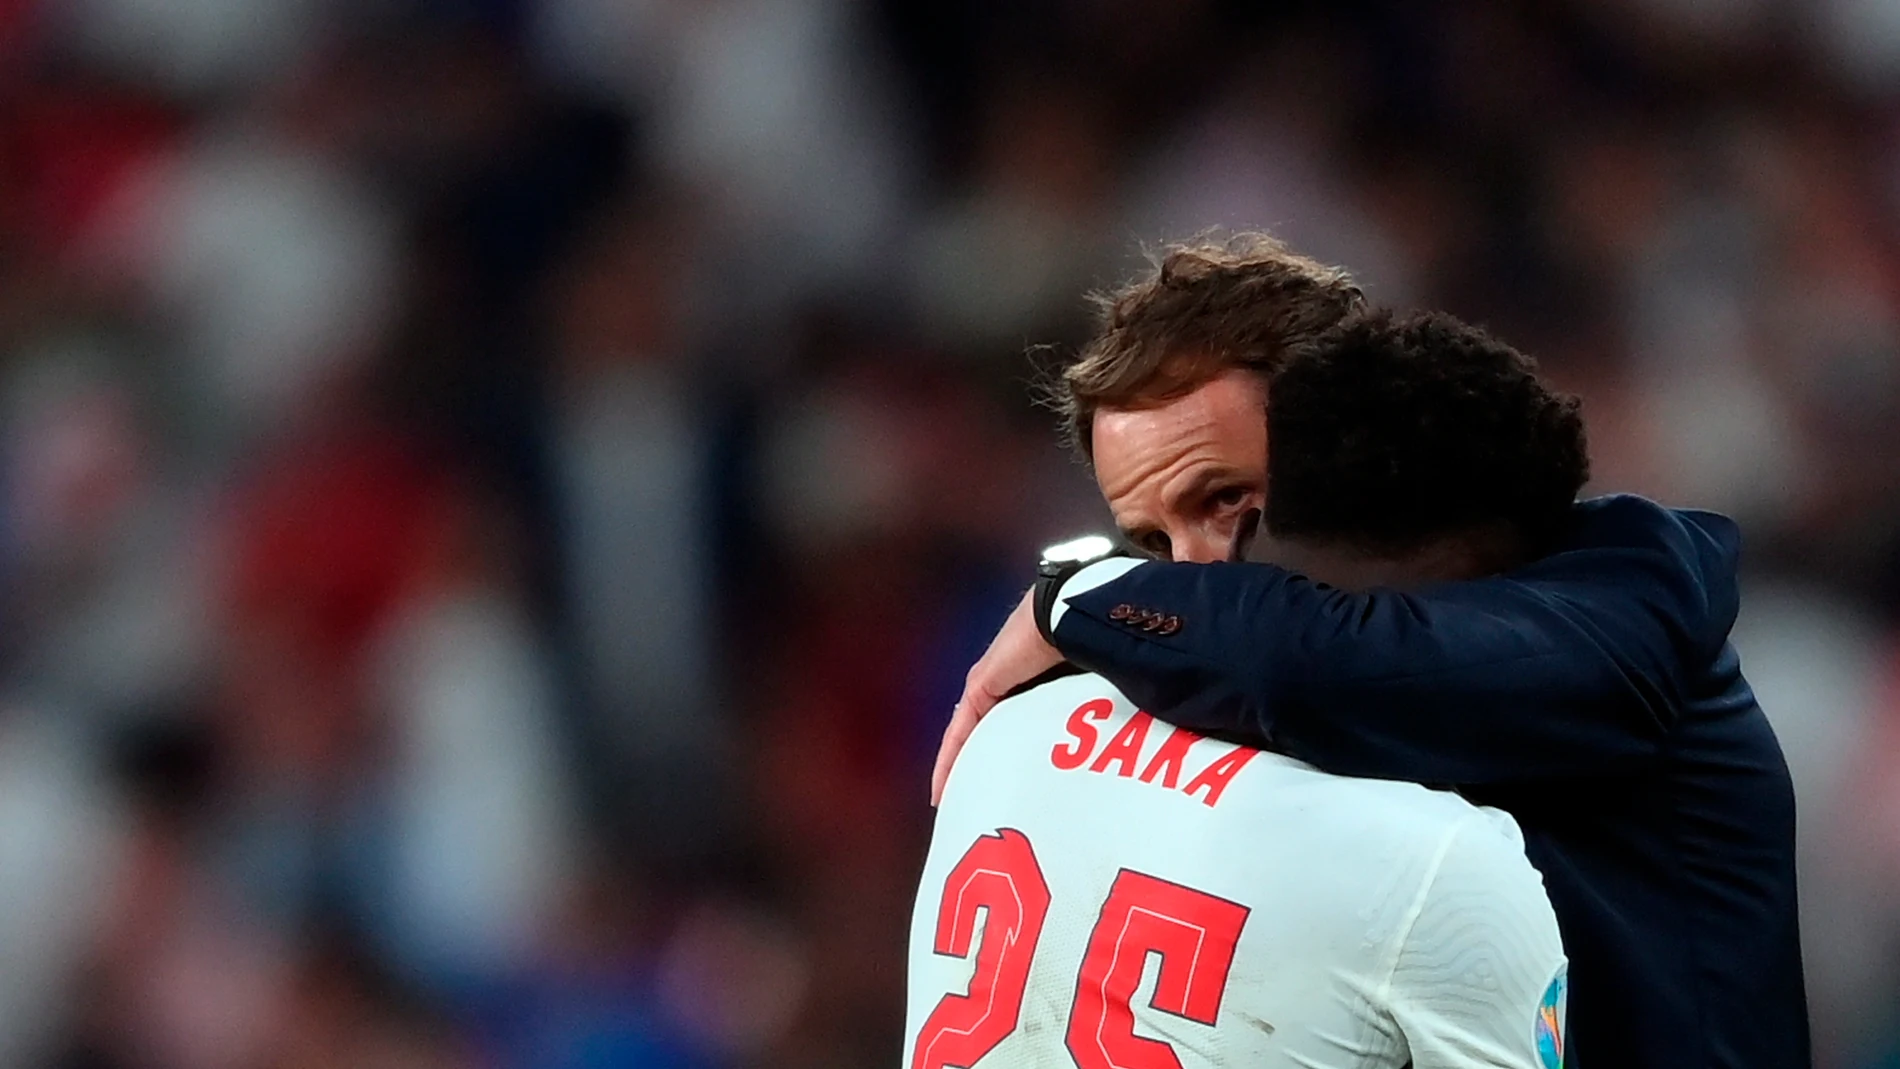 El seleccionador de Inglaterra, Gareth Southgate, consuela a Bukayo Saka después de fallar uno de los lanzamientos de la tanda de penaltis contra Italia en la final de la Eurocpa. EFE/EPA/Laurence Griffiths